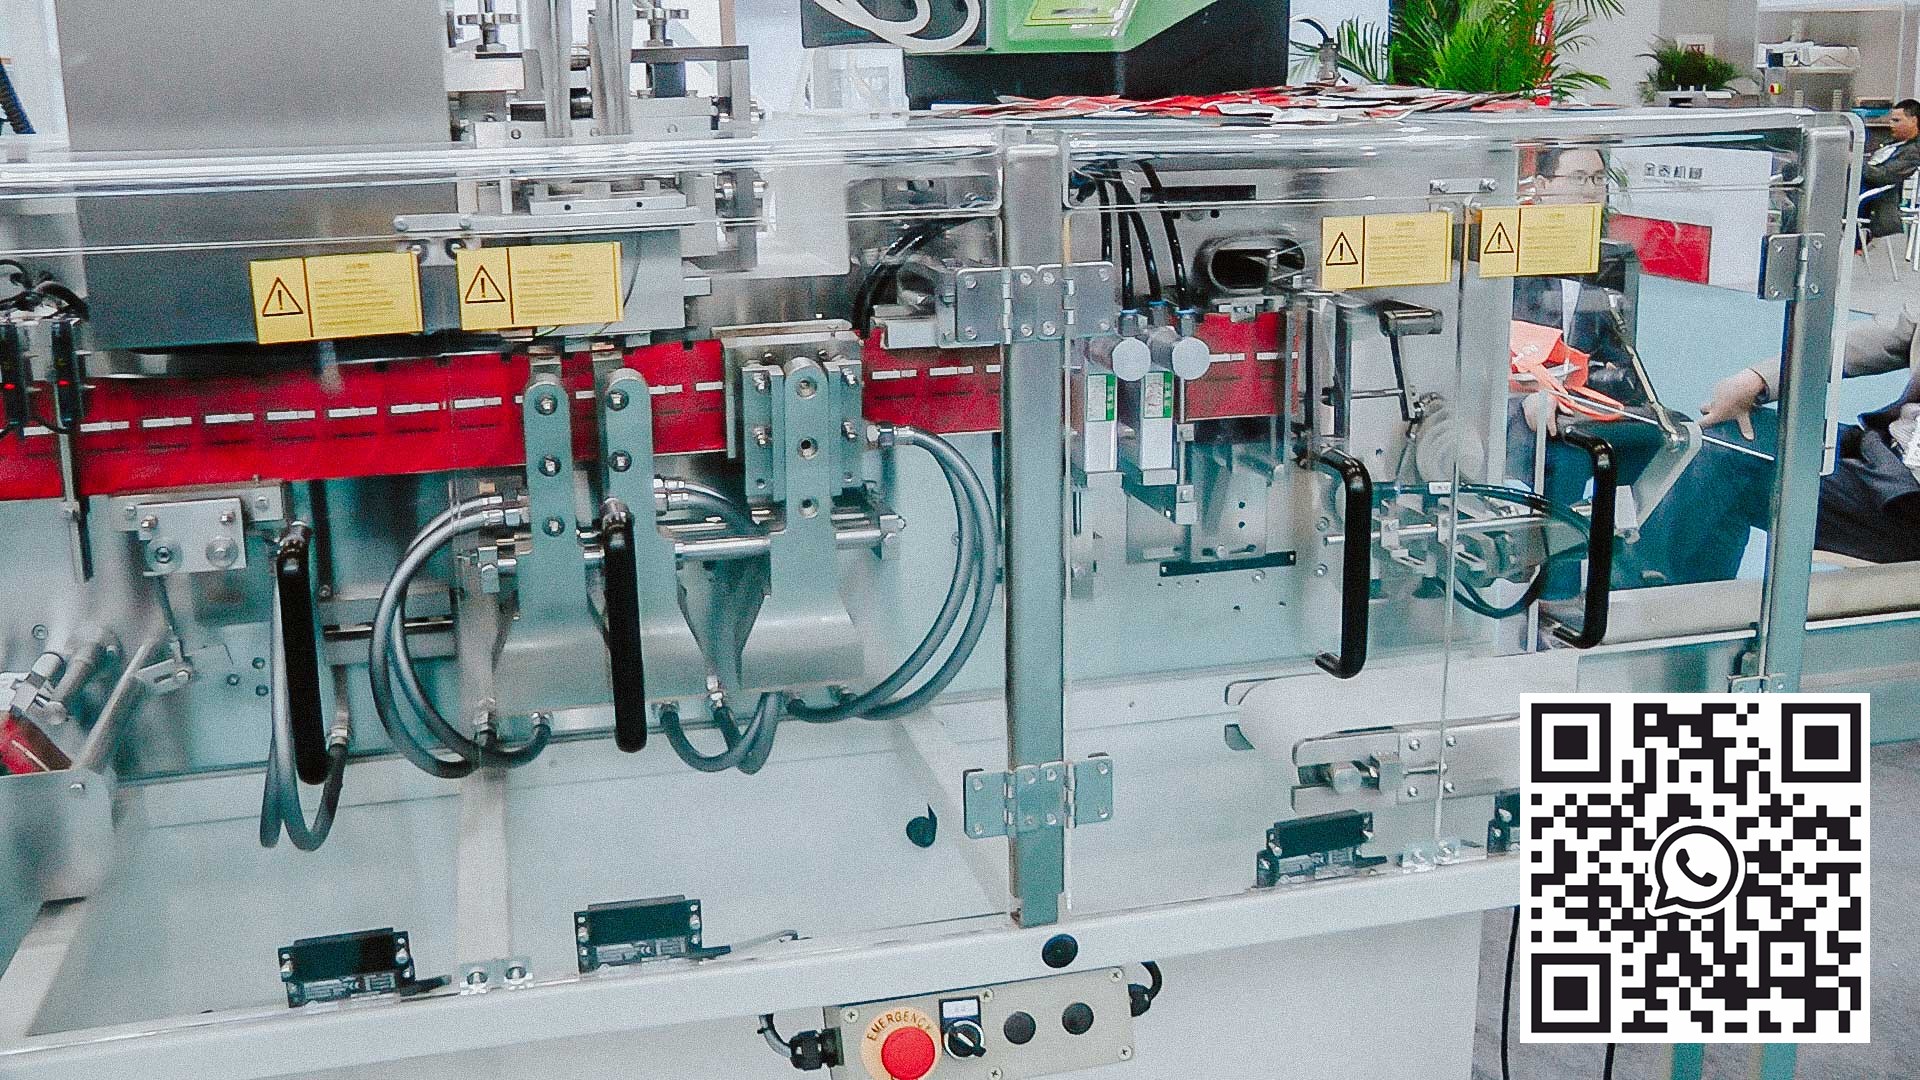 خط إنتاج أوتوماتيكي لإنتاج المناديل المبللة مع عبوة كحول فردية أمريكية